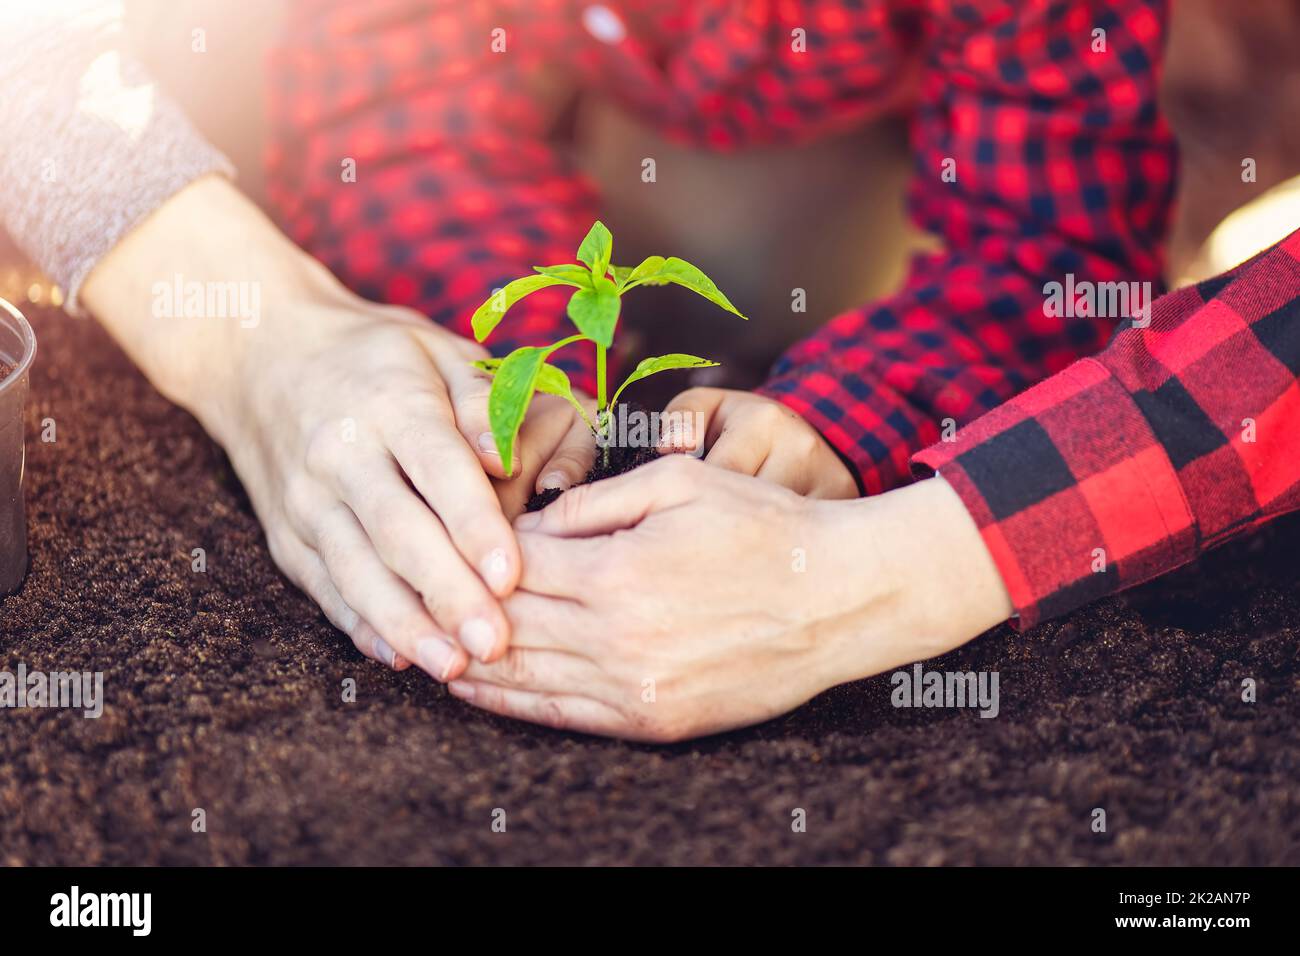 Vater, Mutter und ihr Kind halten eine junge Pflanze zusammen, die im Boden gewachsen ist. Stockfoto